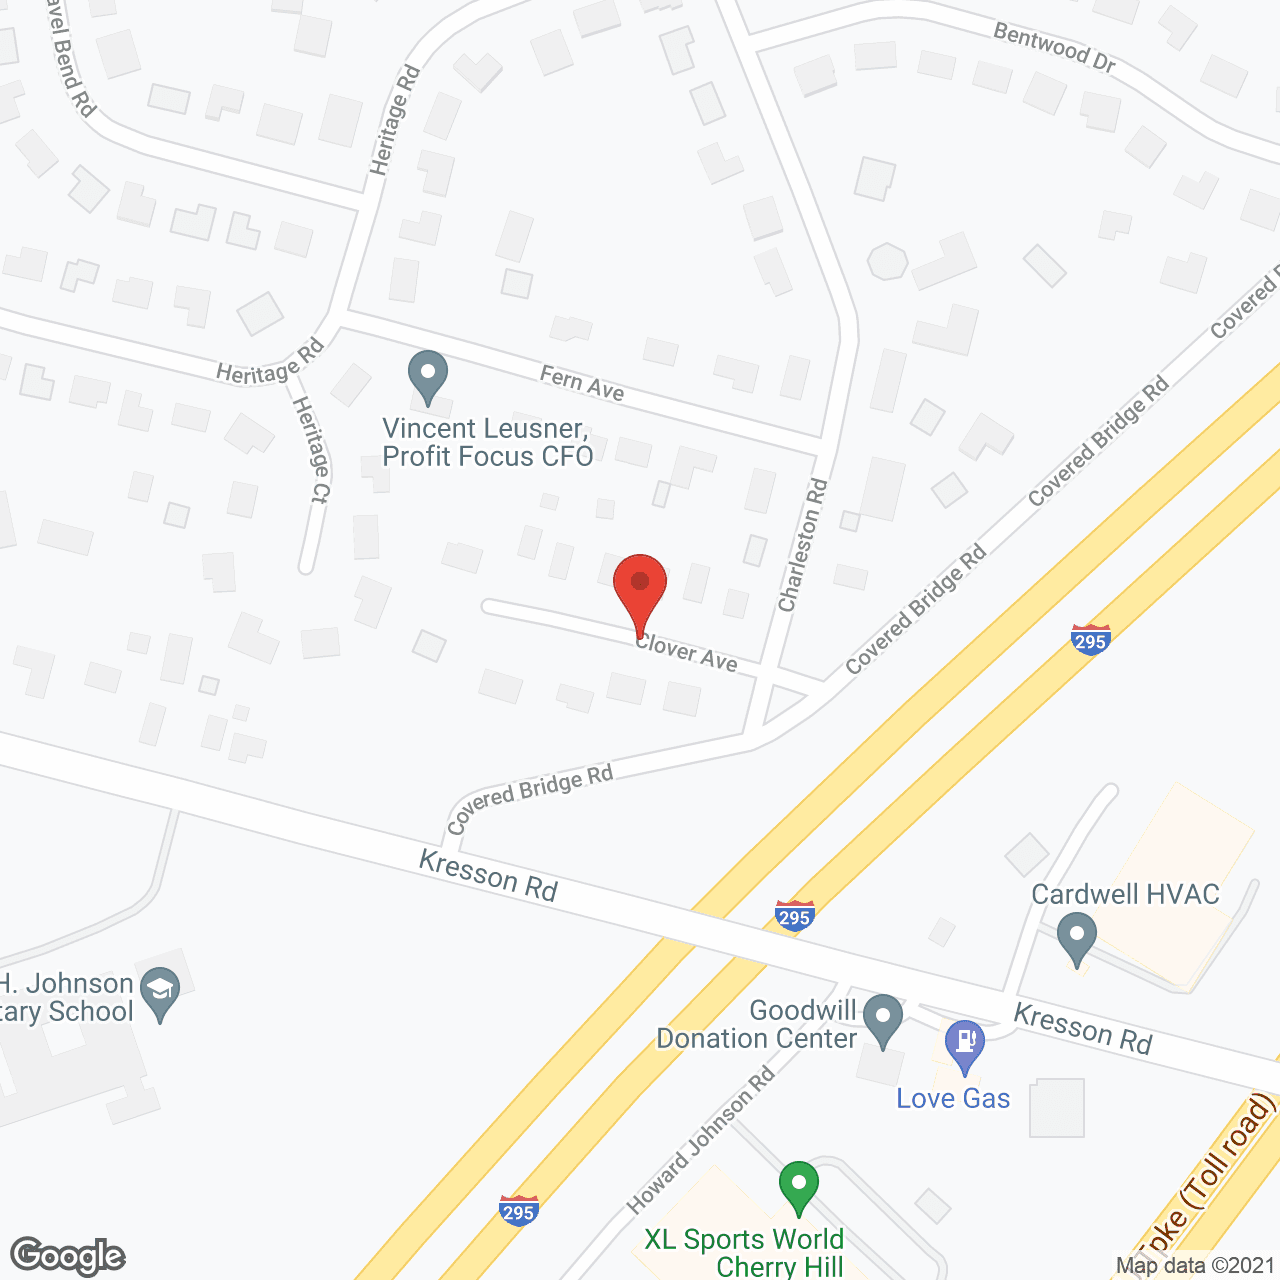 Vista Ridge of Magnolia in google map